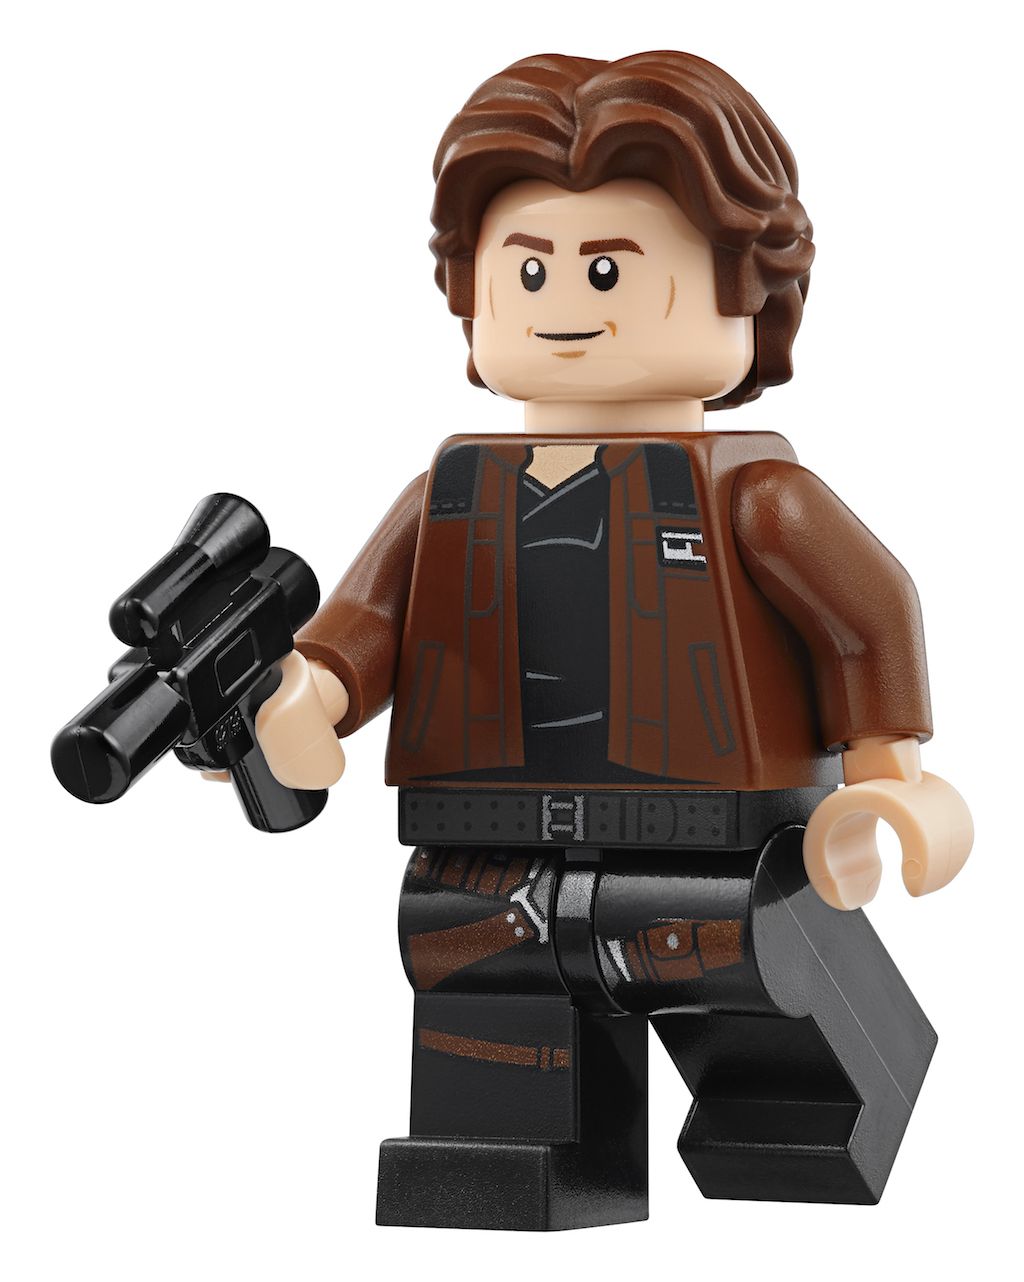 LEGO rediseña el Halcón Milenario de Han Solo, Campañas